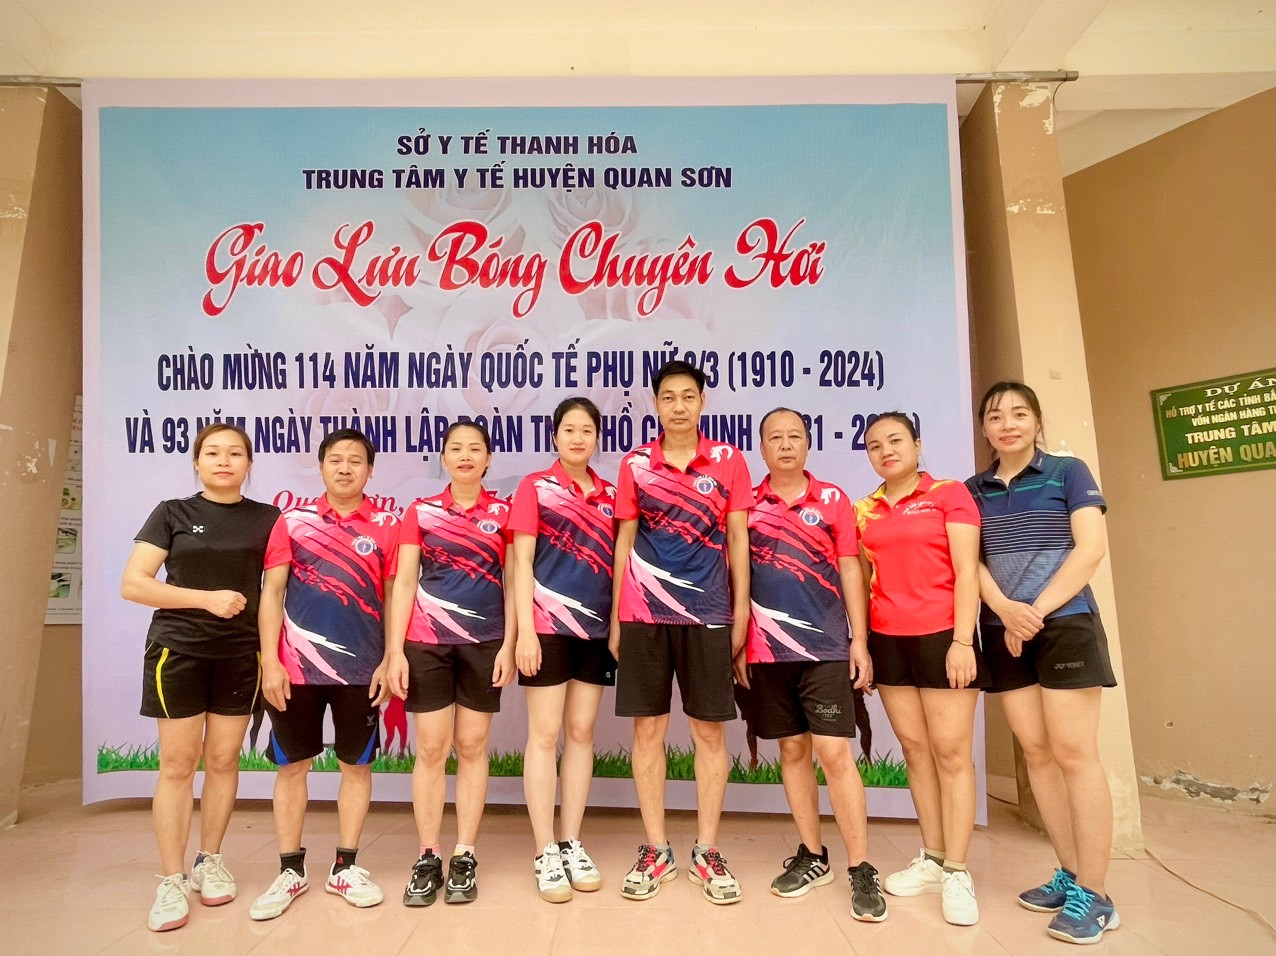 Trung tâm y tế huyện Quan Sơn: Đẩy mạnh phong trào thể dục, thể thao nâng cao sức khỏe